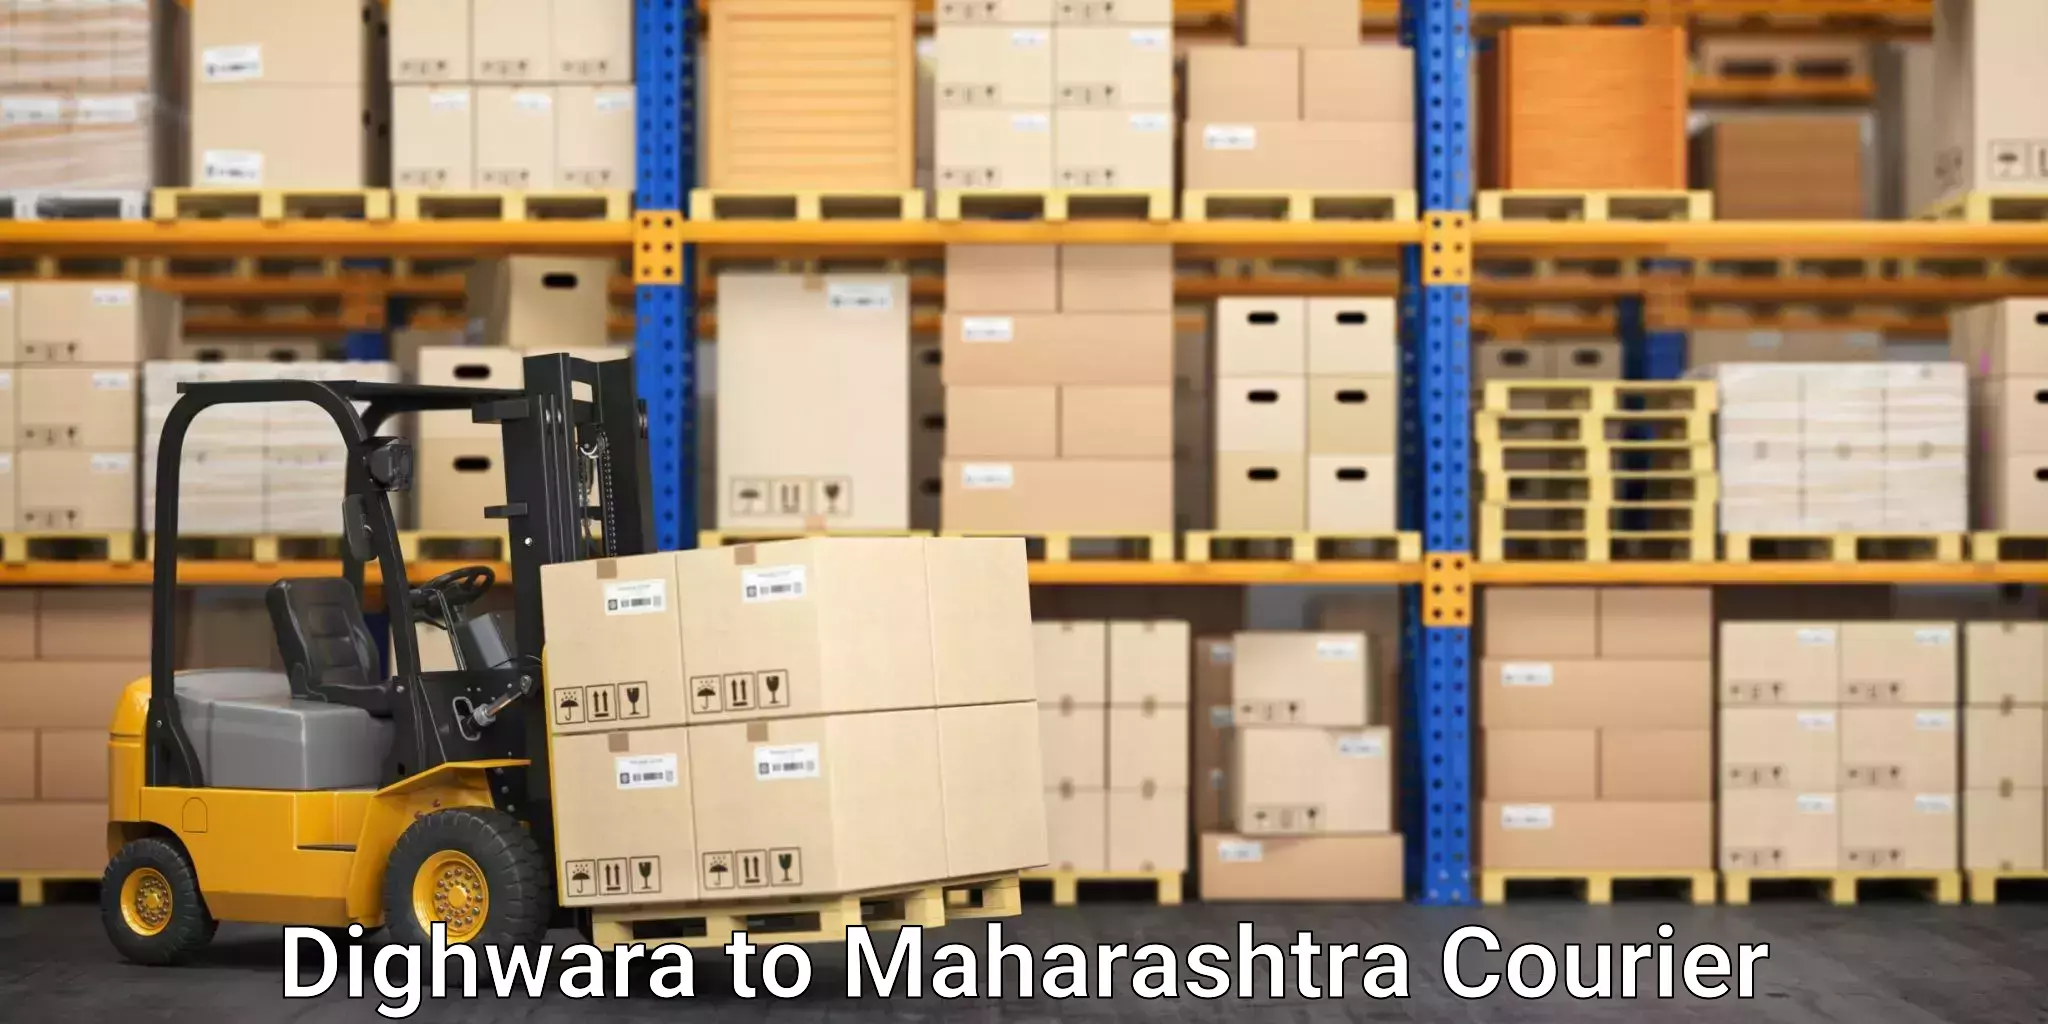 Expert furniture movers Dighwara to Karjat